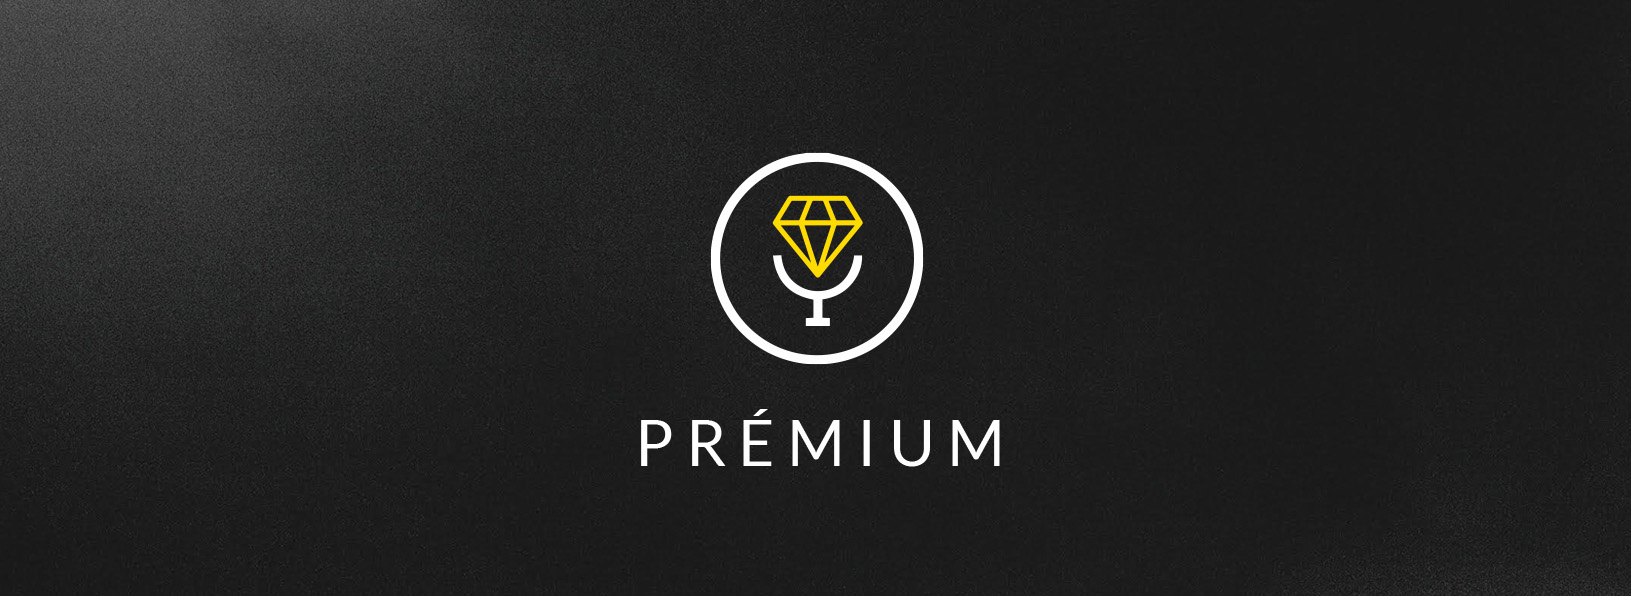 DSS Premium Logo